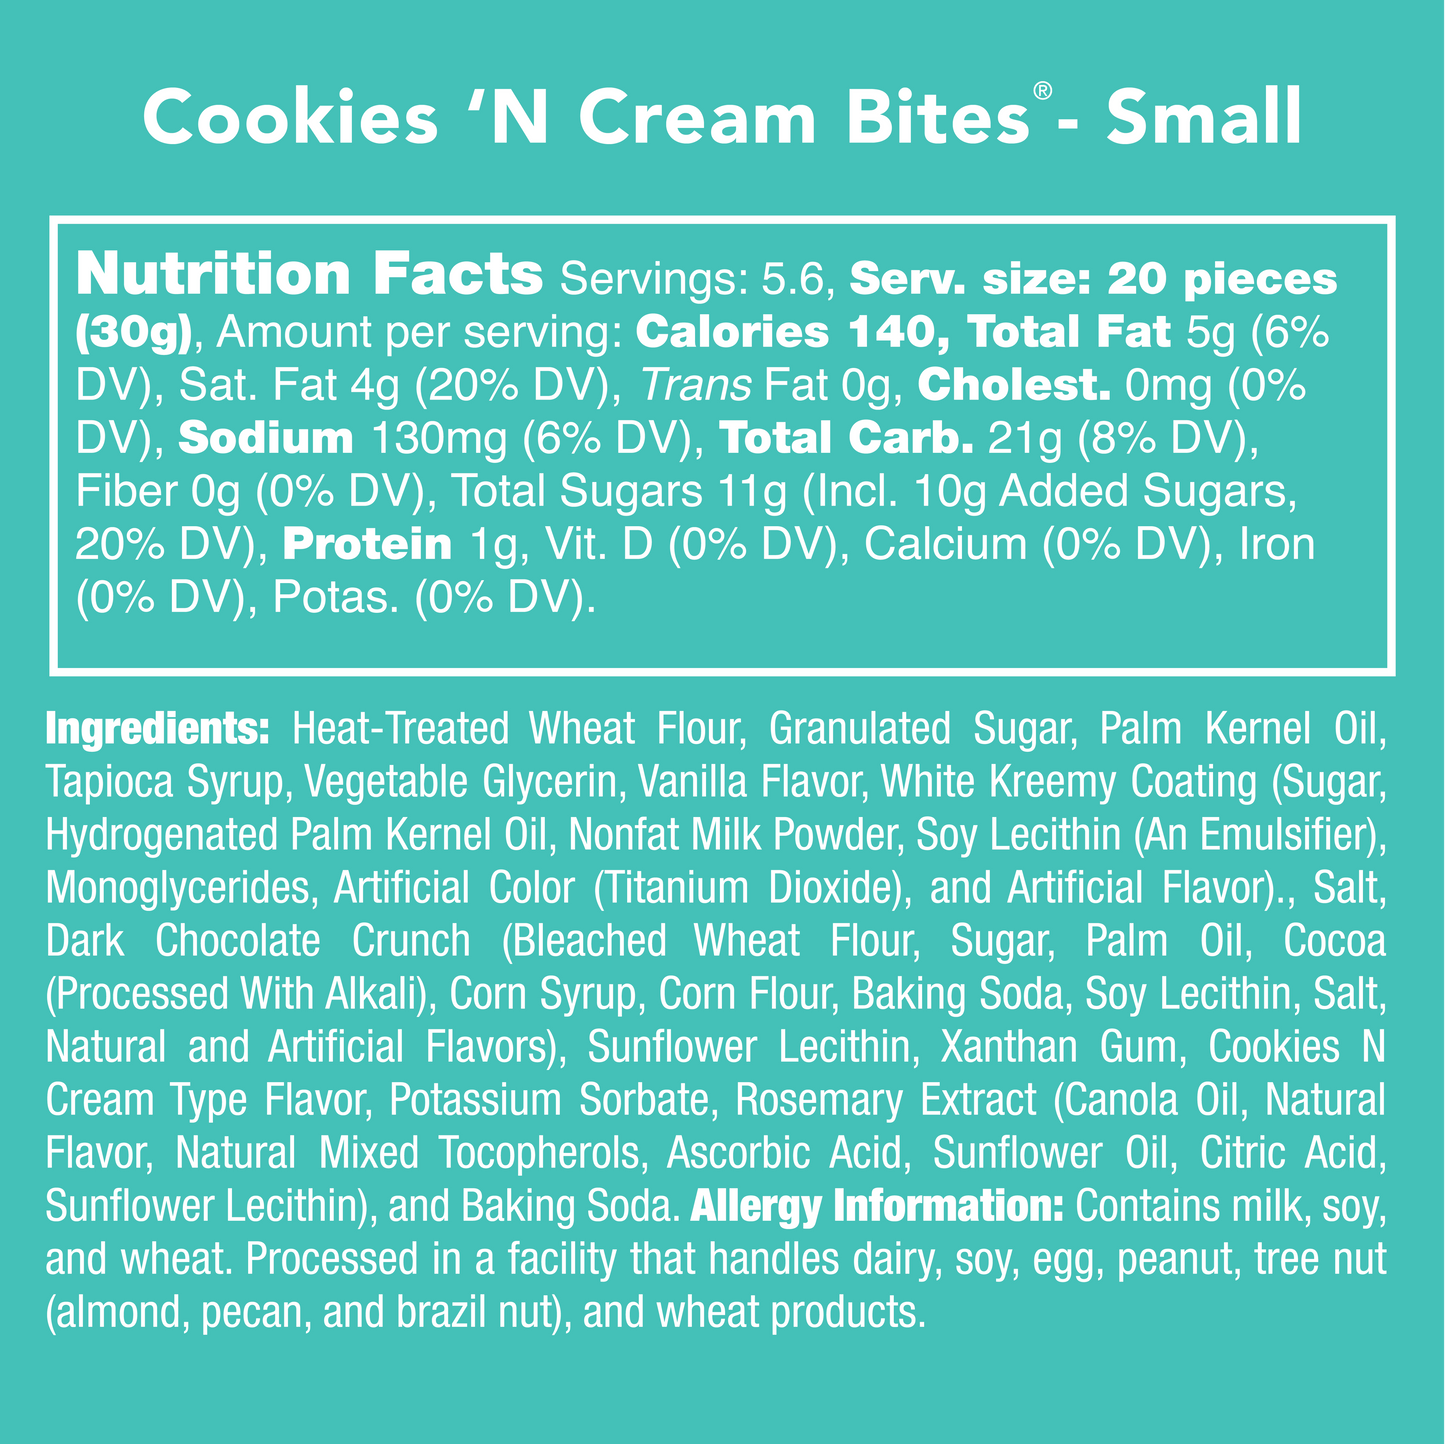 Cookies & Cream Bites